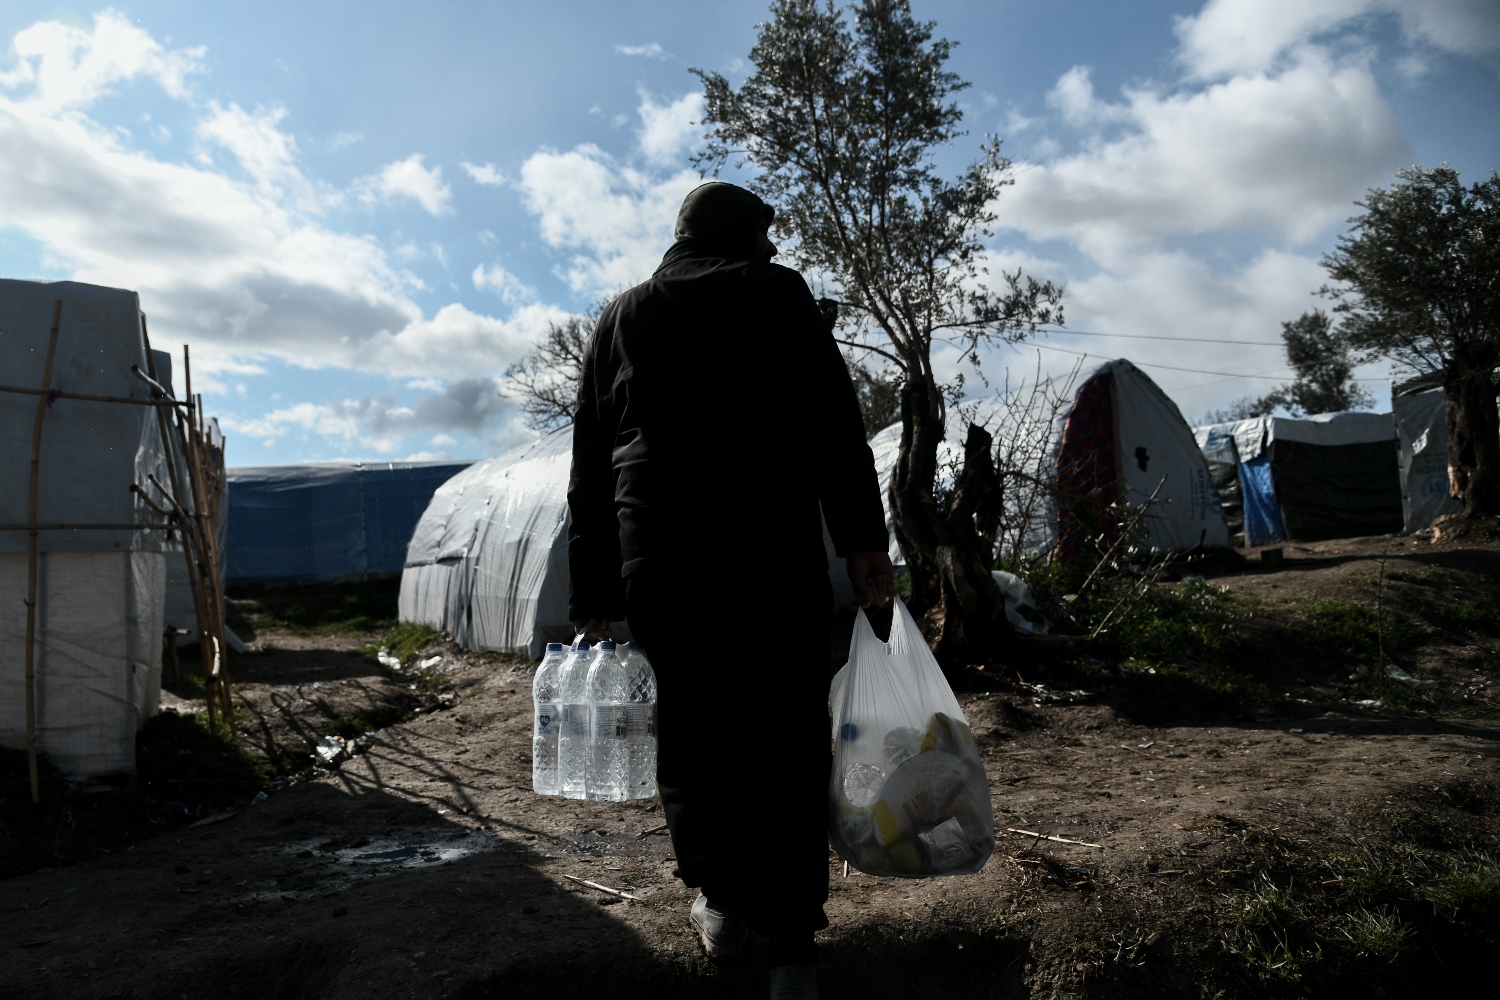 Αναβλήθηκε η δίκη του 23χρονου που πρόσφερε νερό και φαγητό σε πρόσφυγες